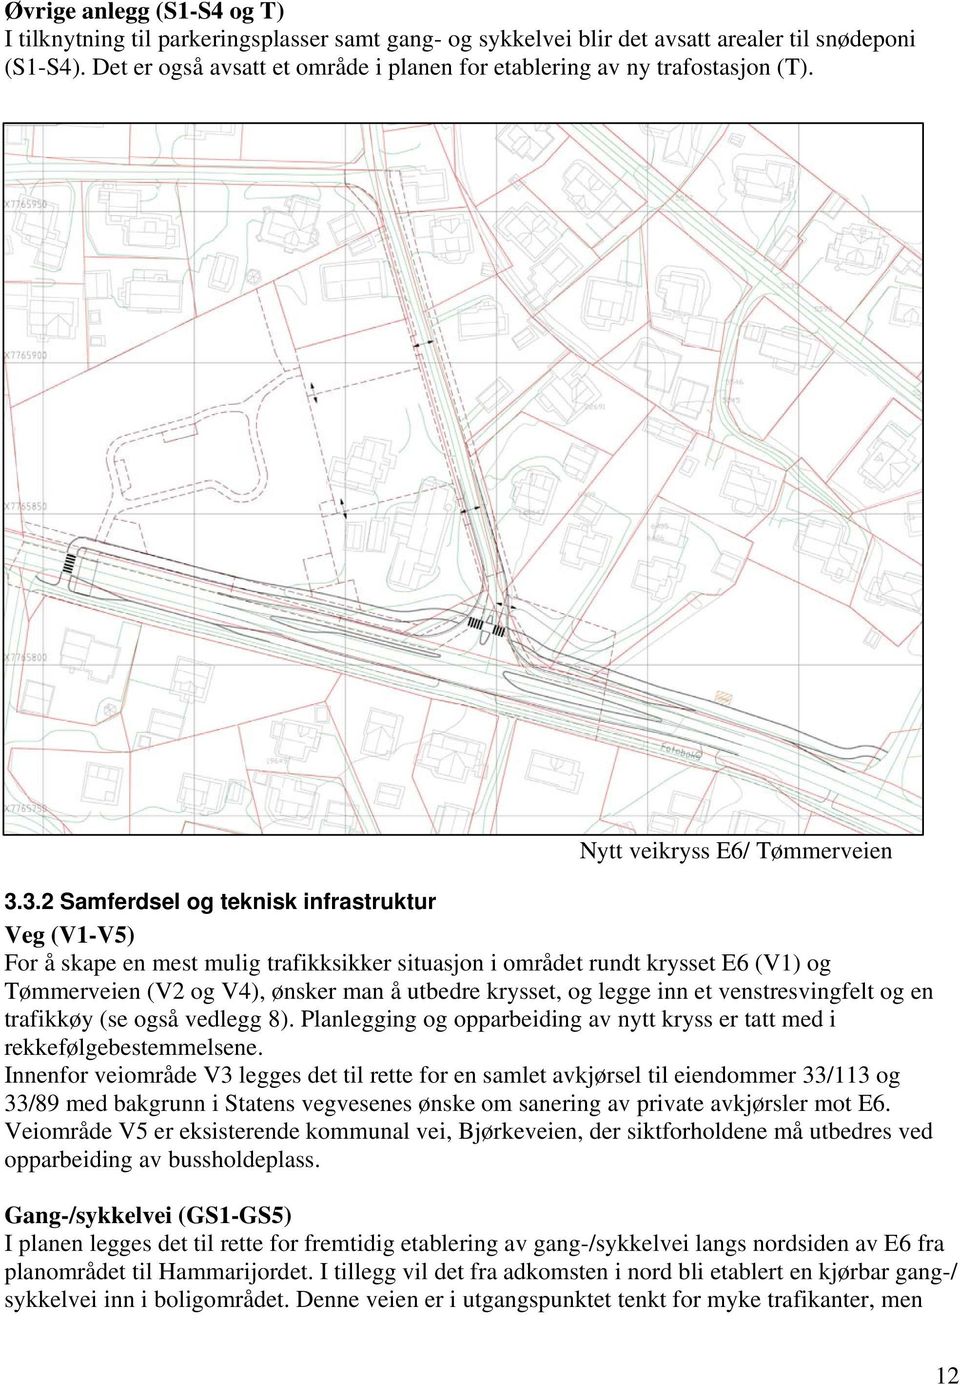 3.2 Samferdsel og teknisk infrastruktur Veg (V1-V5) For å skape en mest mulig trafikksikker situasjon i området rundt krysset E6 (V1) og Tømmerveien (V2 og V4), ønsker man å utbedre krysset, og legge